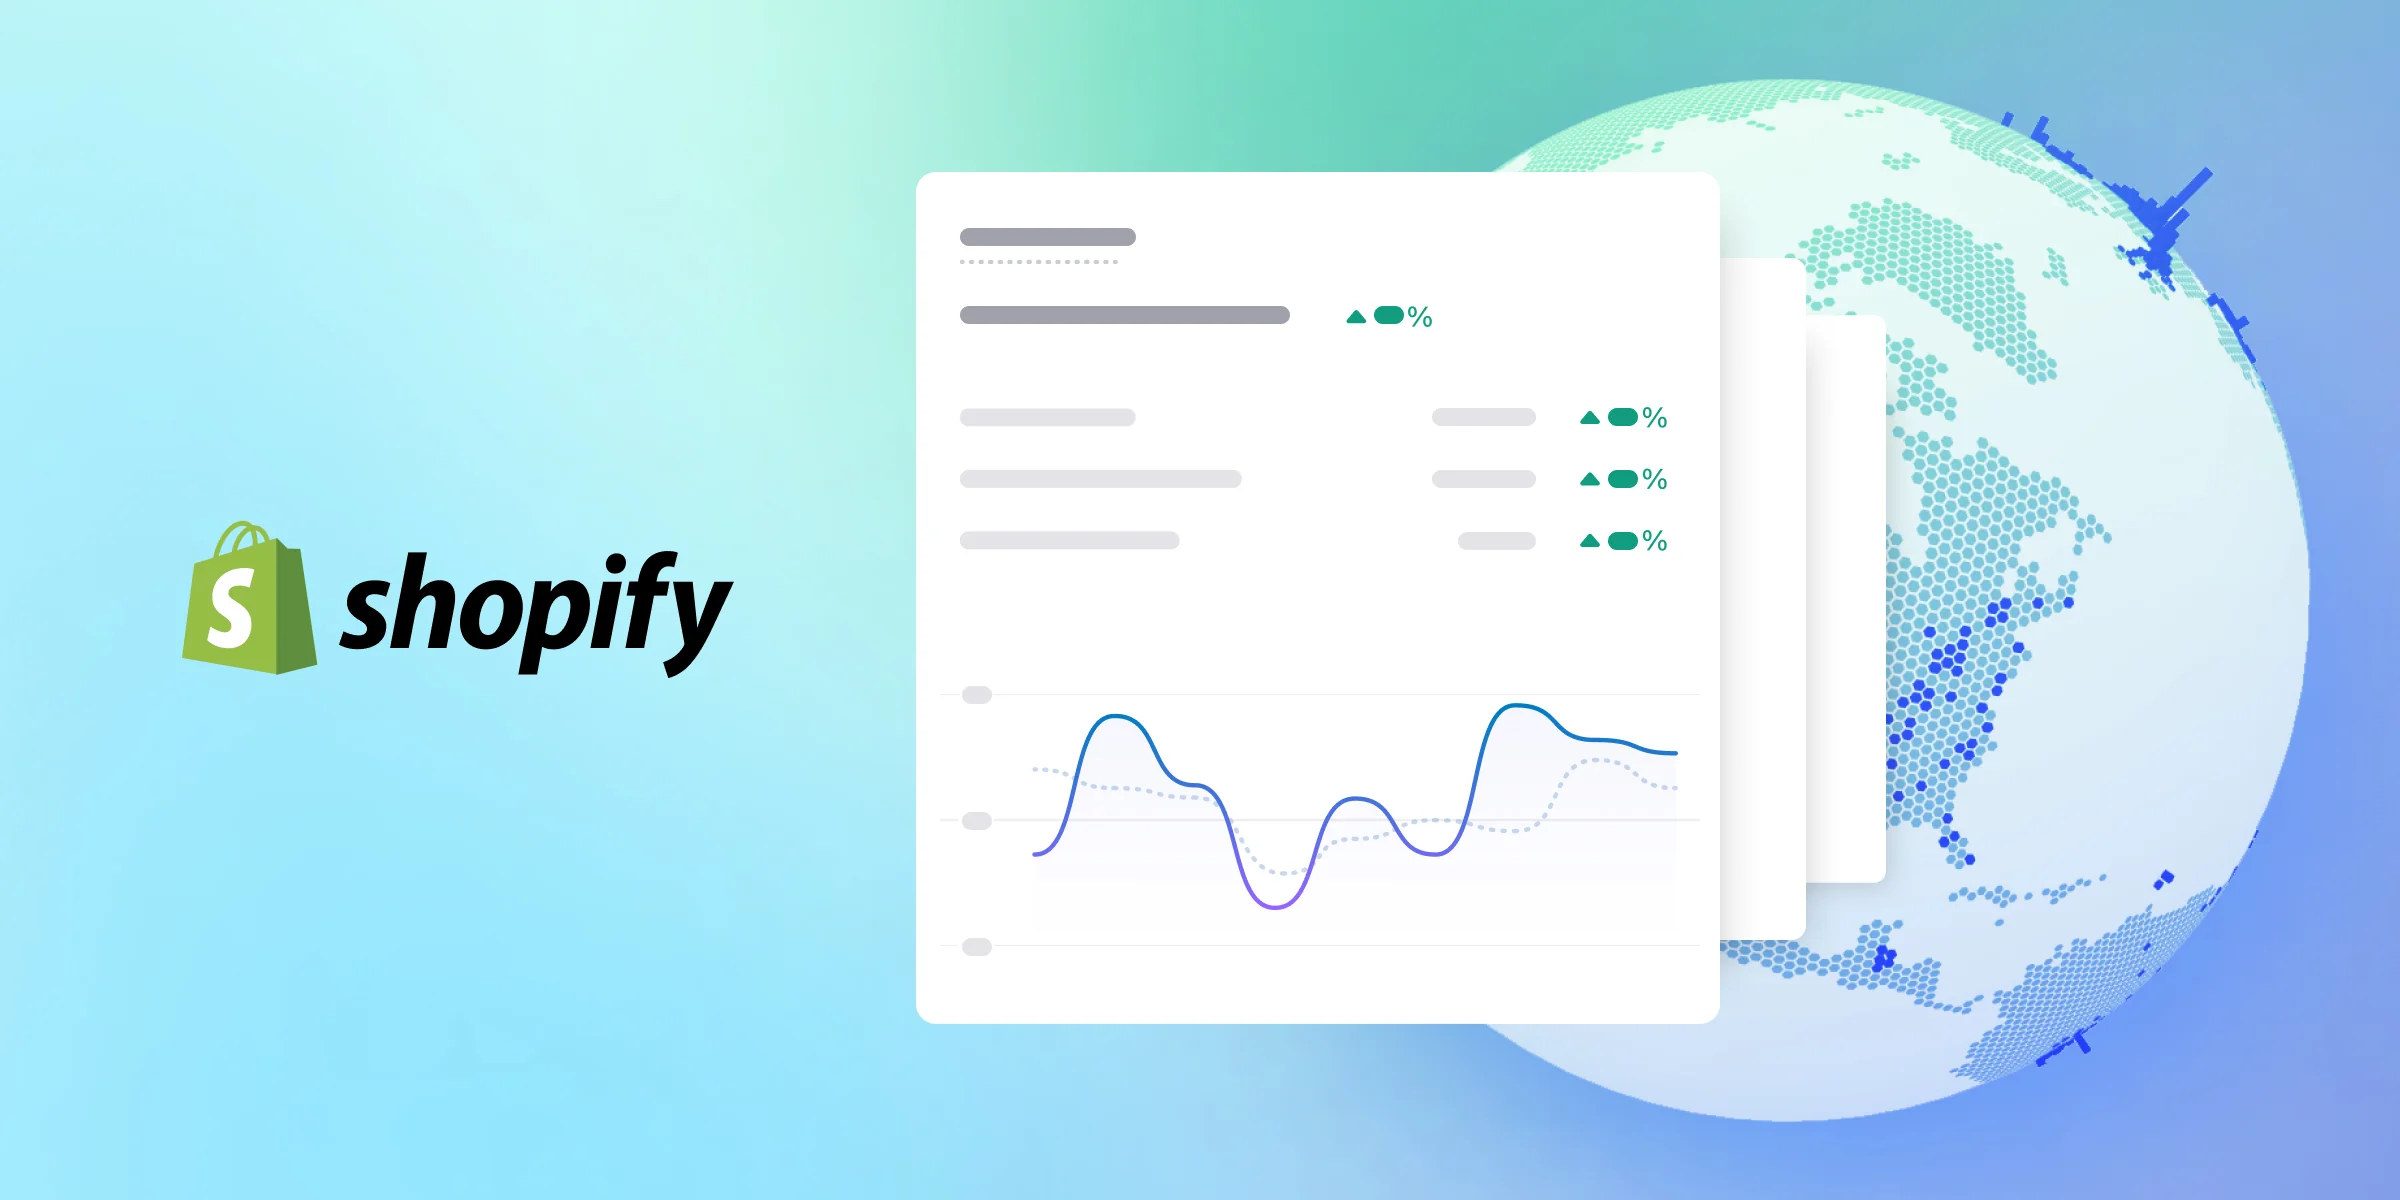 Shopify ecommerce platform